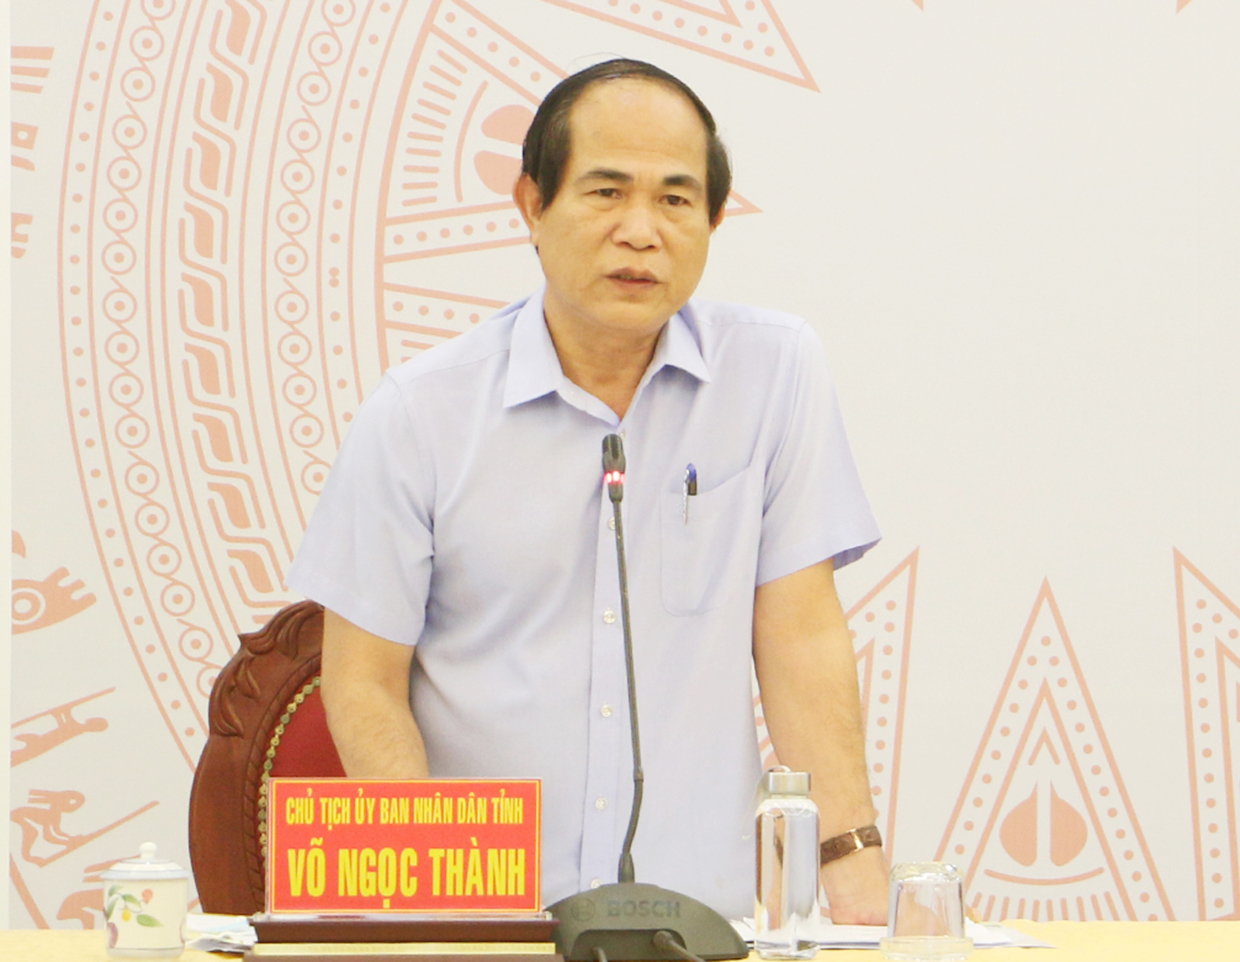 Chủ tịch UBND tỉnh Võ Ngọc Thành gửi thư chúc mừng Ngày Doanh nhân Việt Nam 13-10